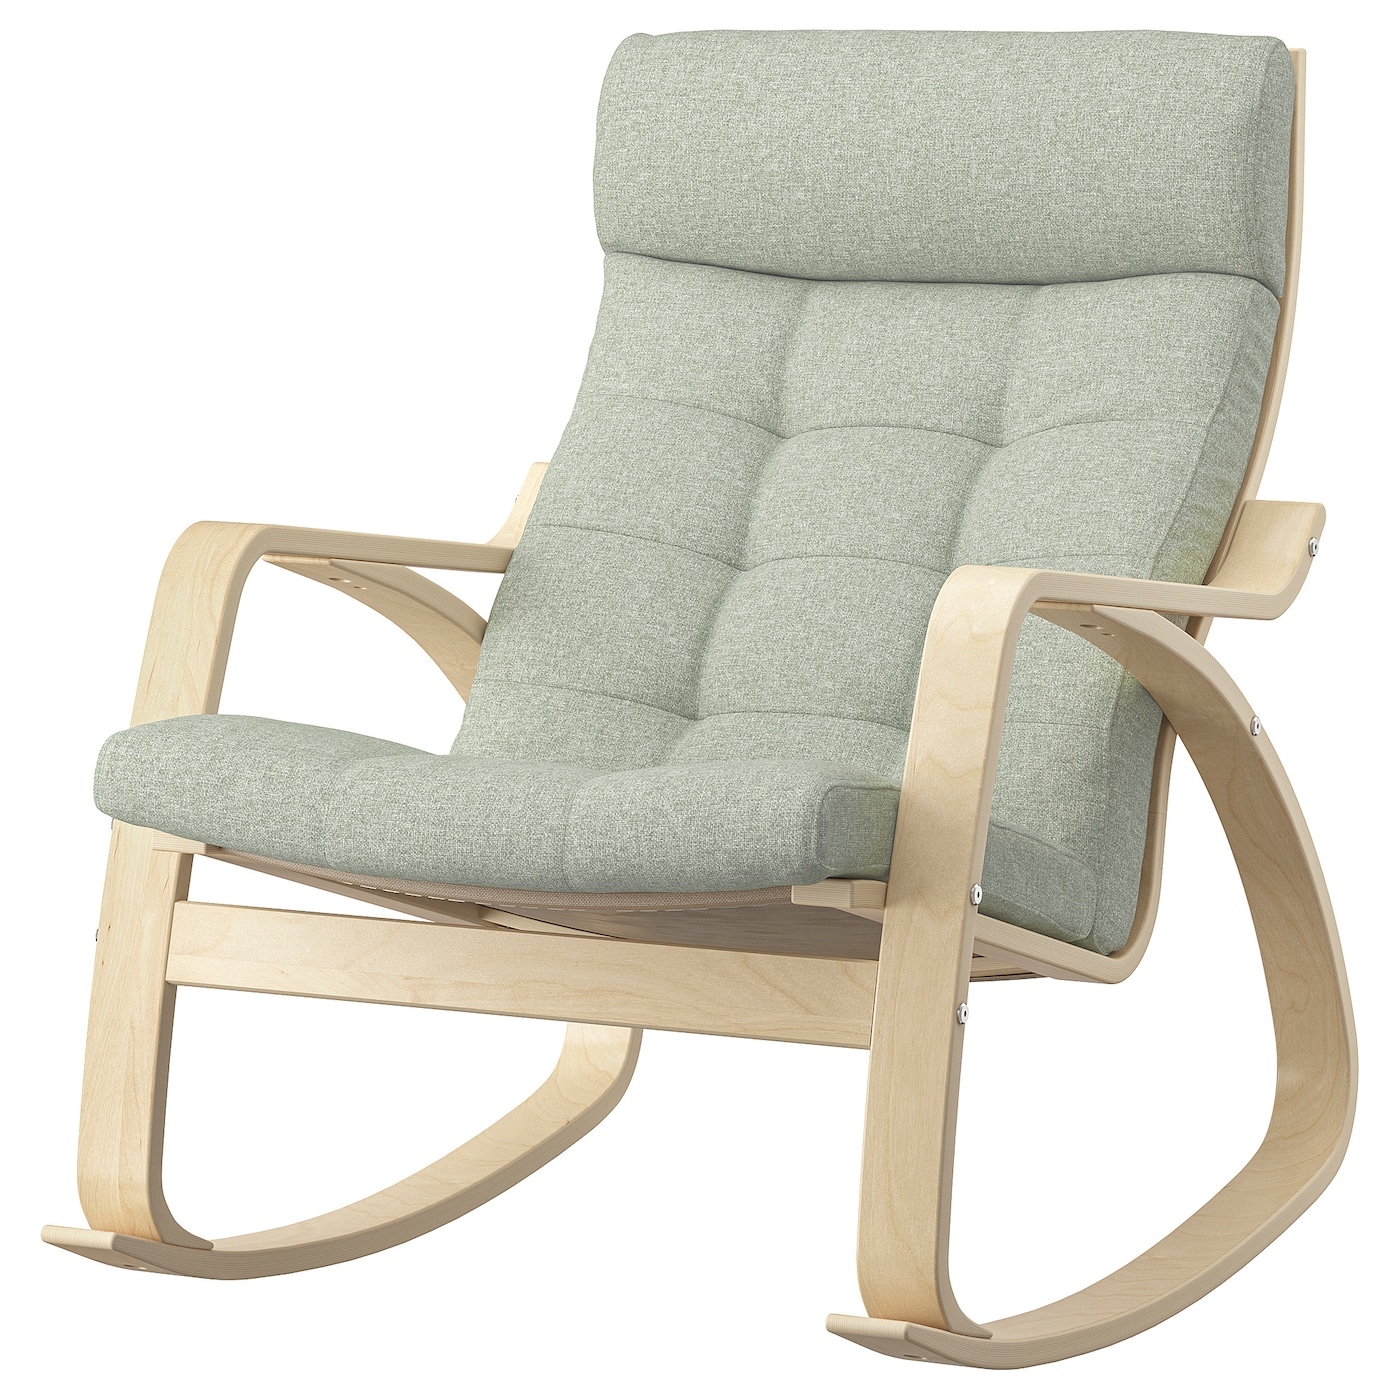 ПОЭНГ Кресло-качалка, березовый шпон/Гуннаред светло-зеленый POÄNG IKEA кресло качалка remington rocking сhair relaxing rm2026